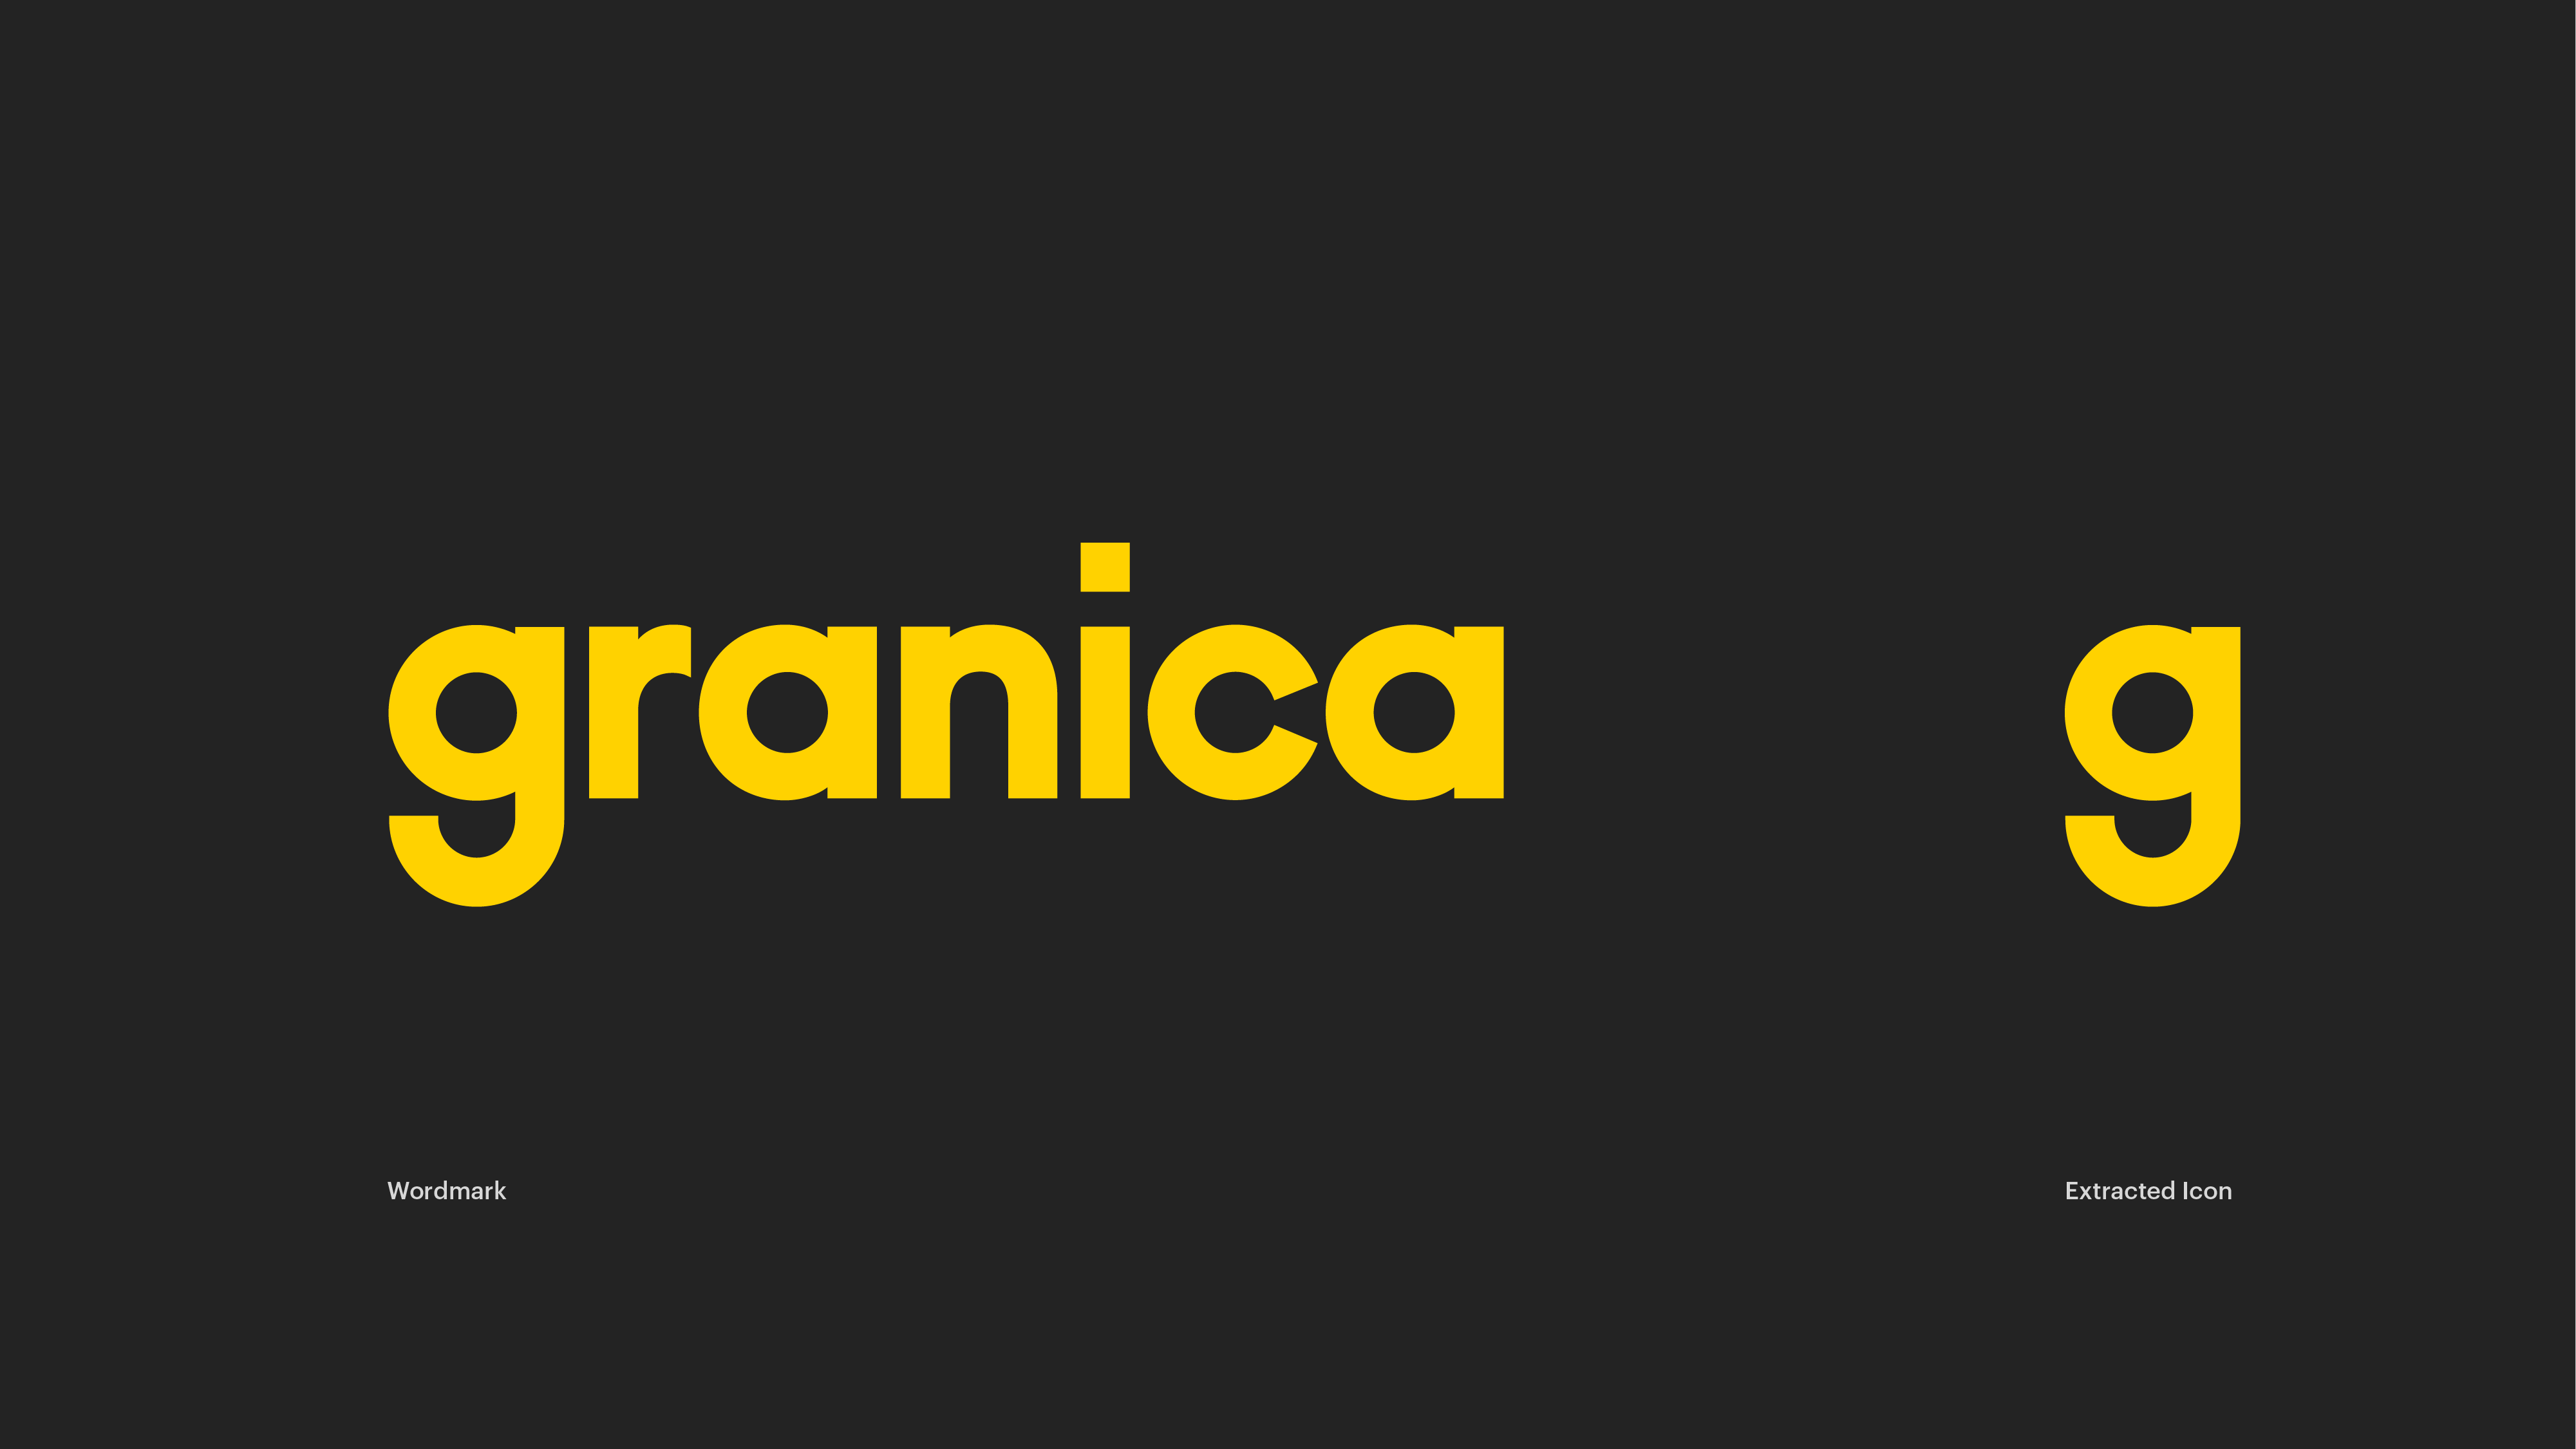 Granica-Design-Applications-r2-v3-03